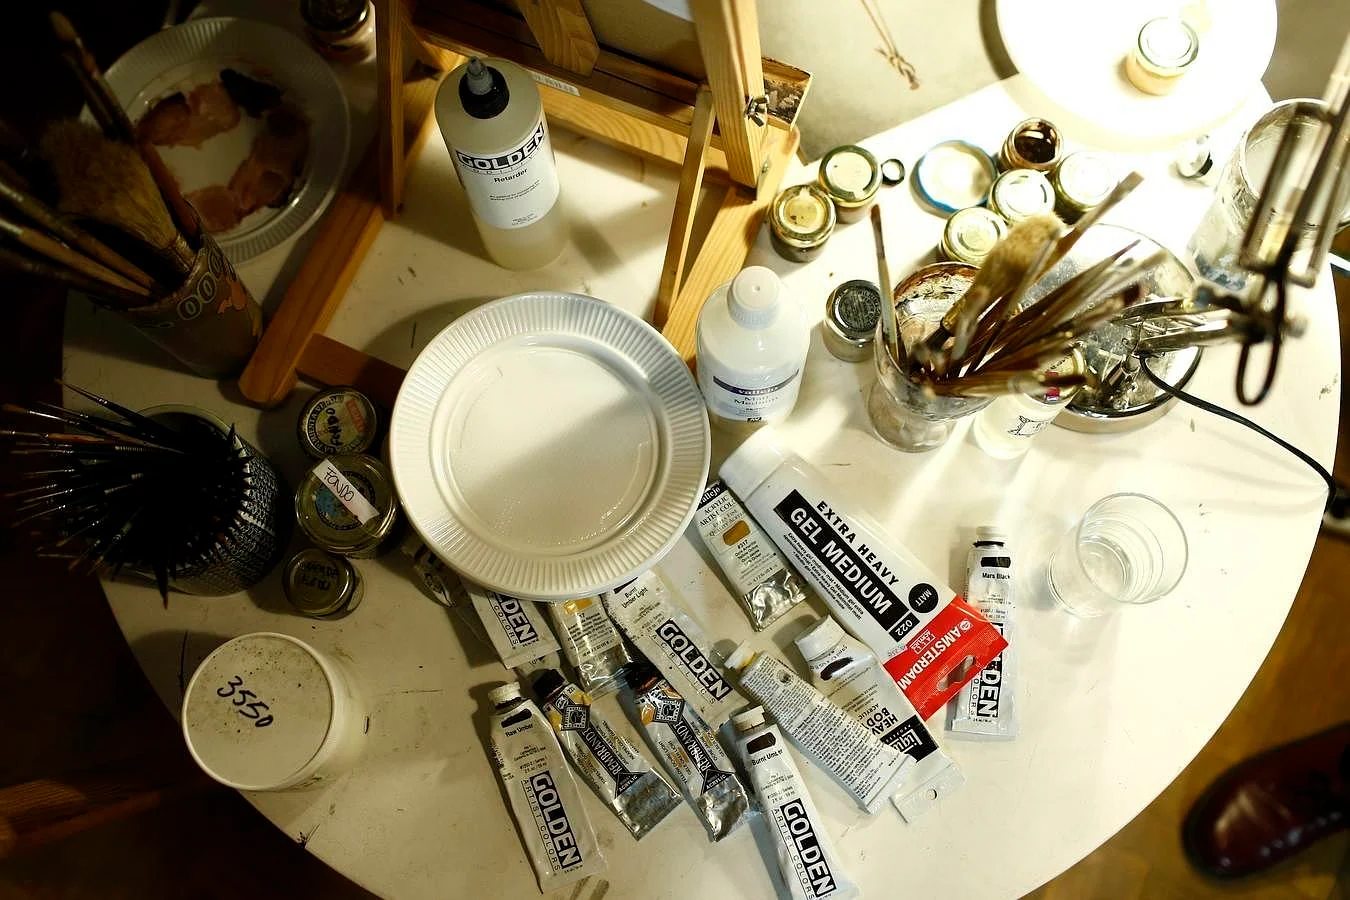 La mesa del comedor, llenade pinceles y tubos de pintura, hace las veces de mesa de trabajo 